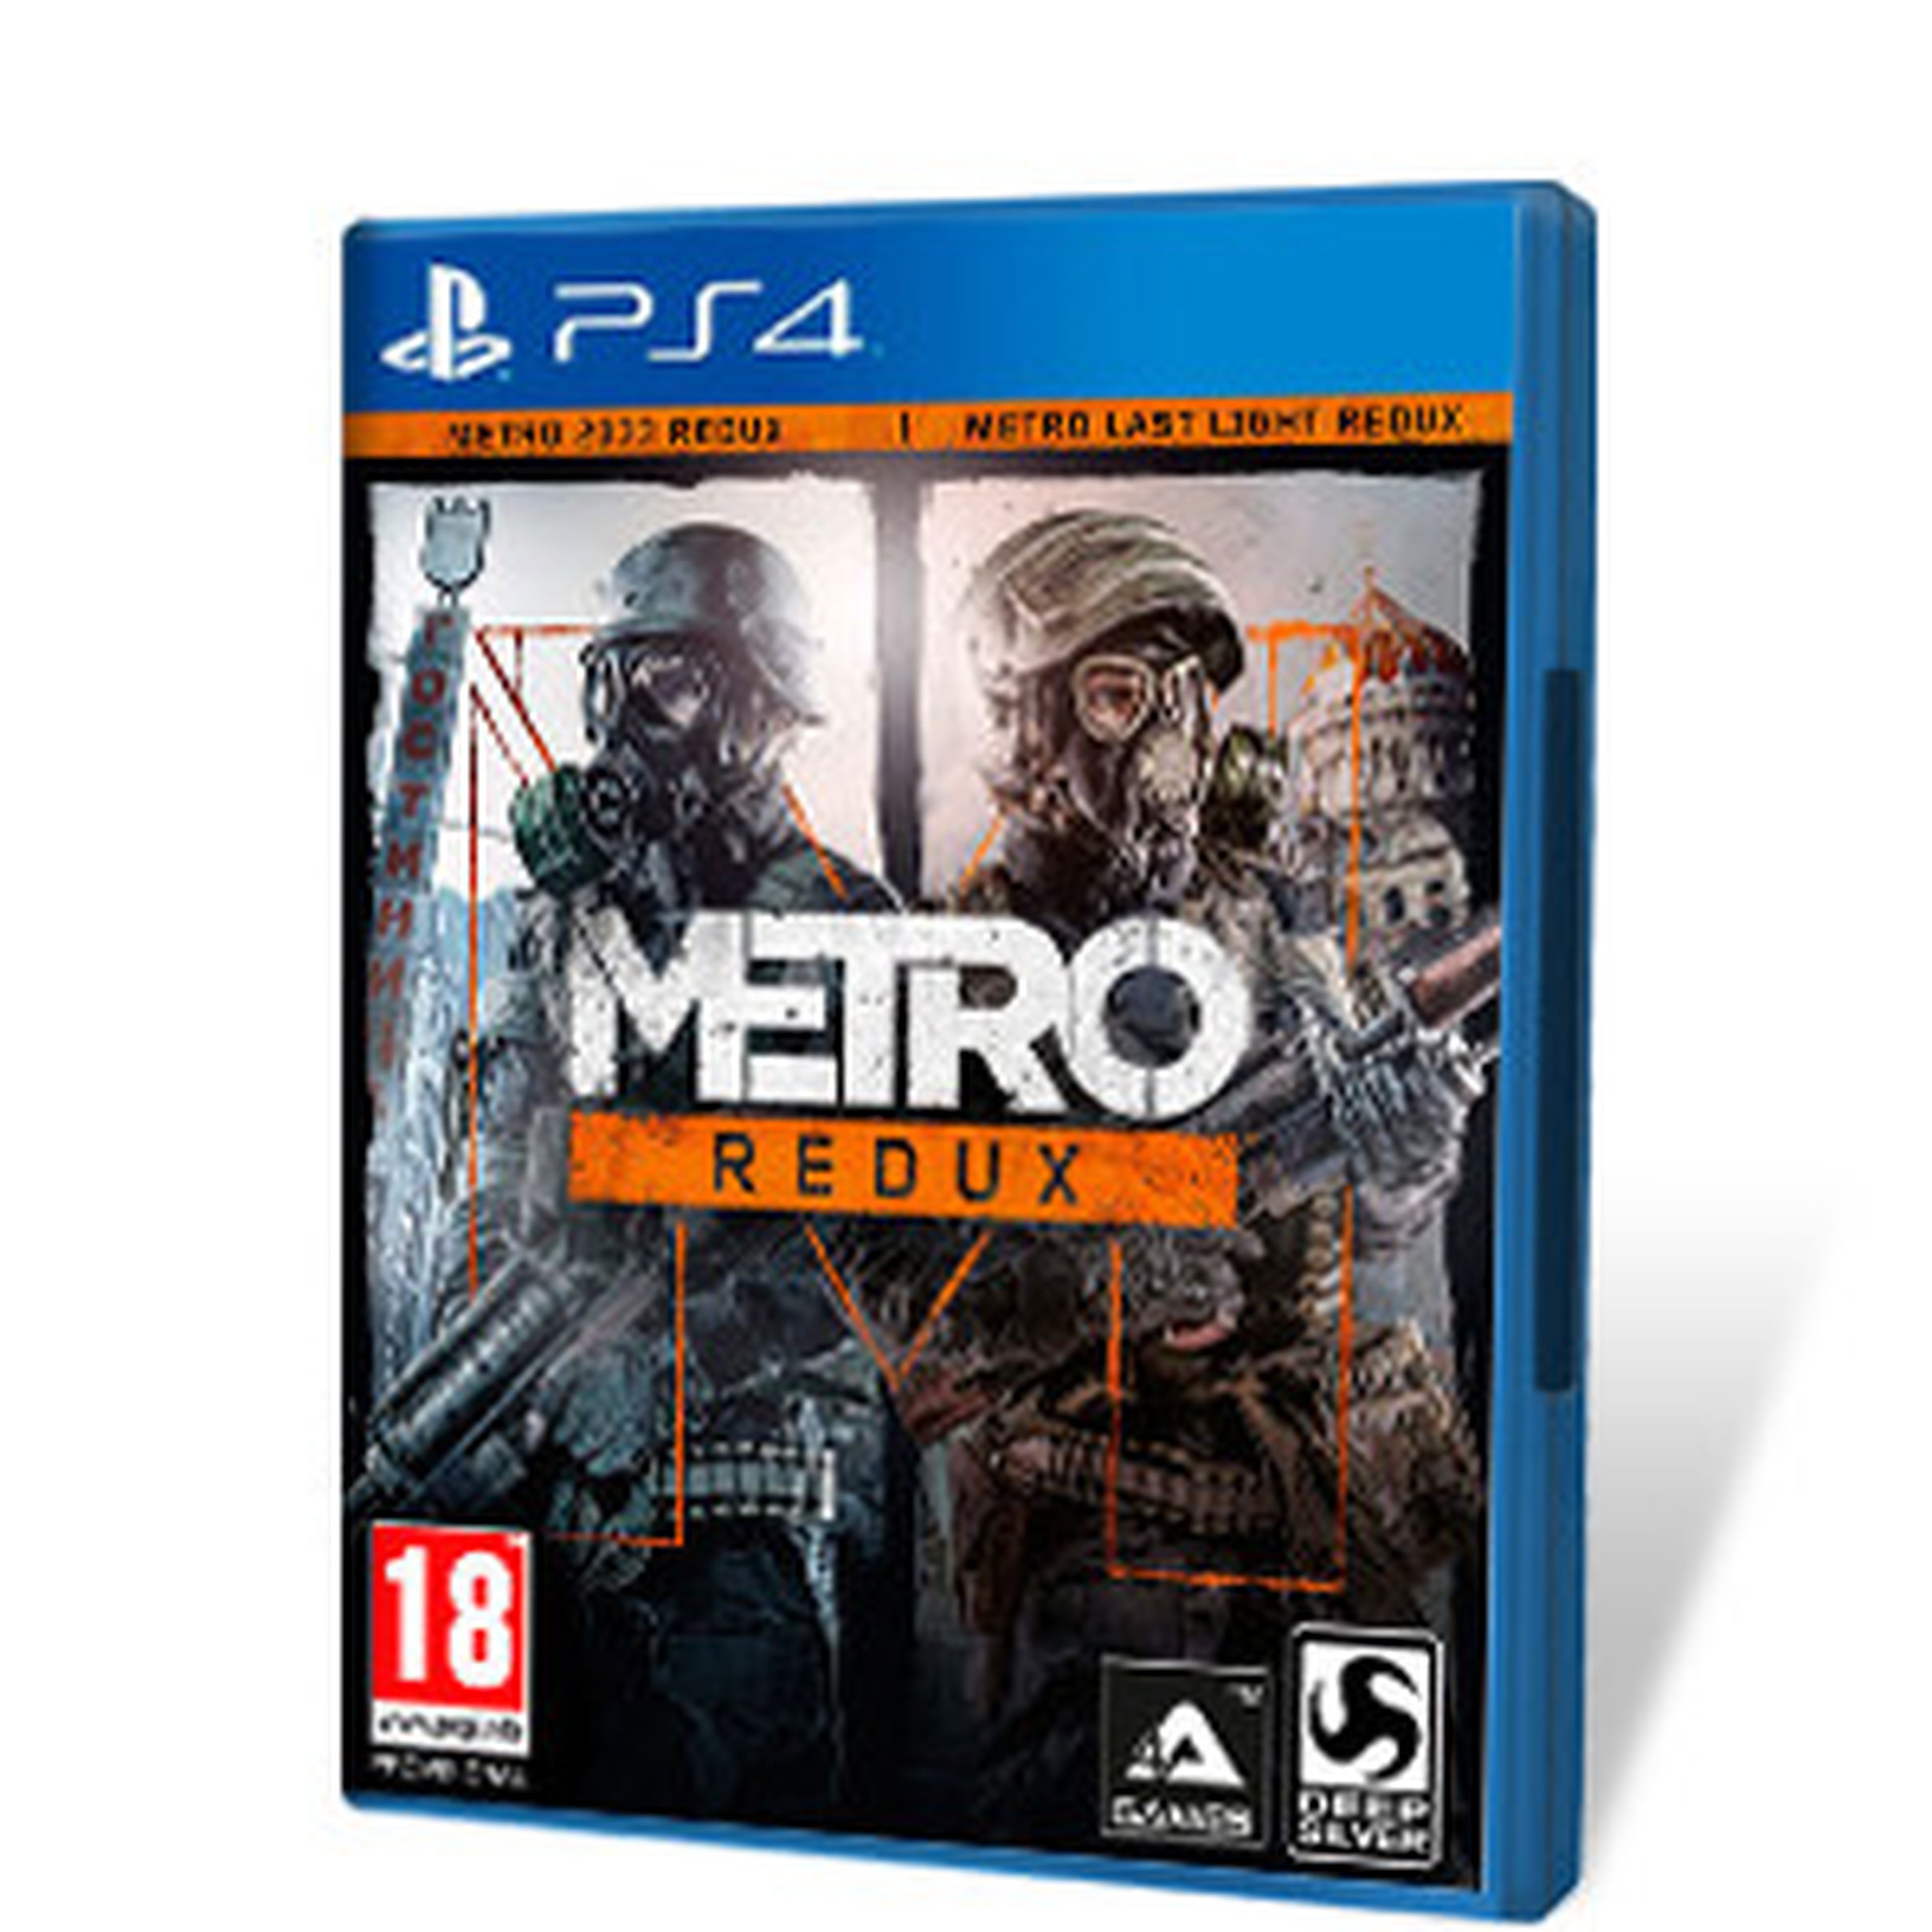 Metro Redux para PS4